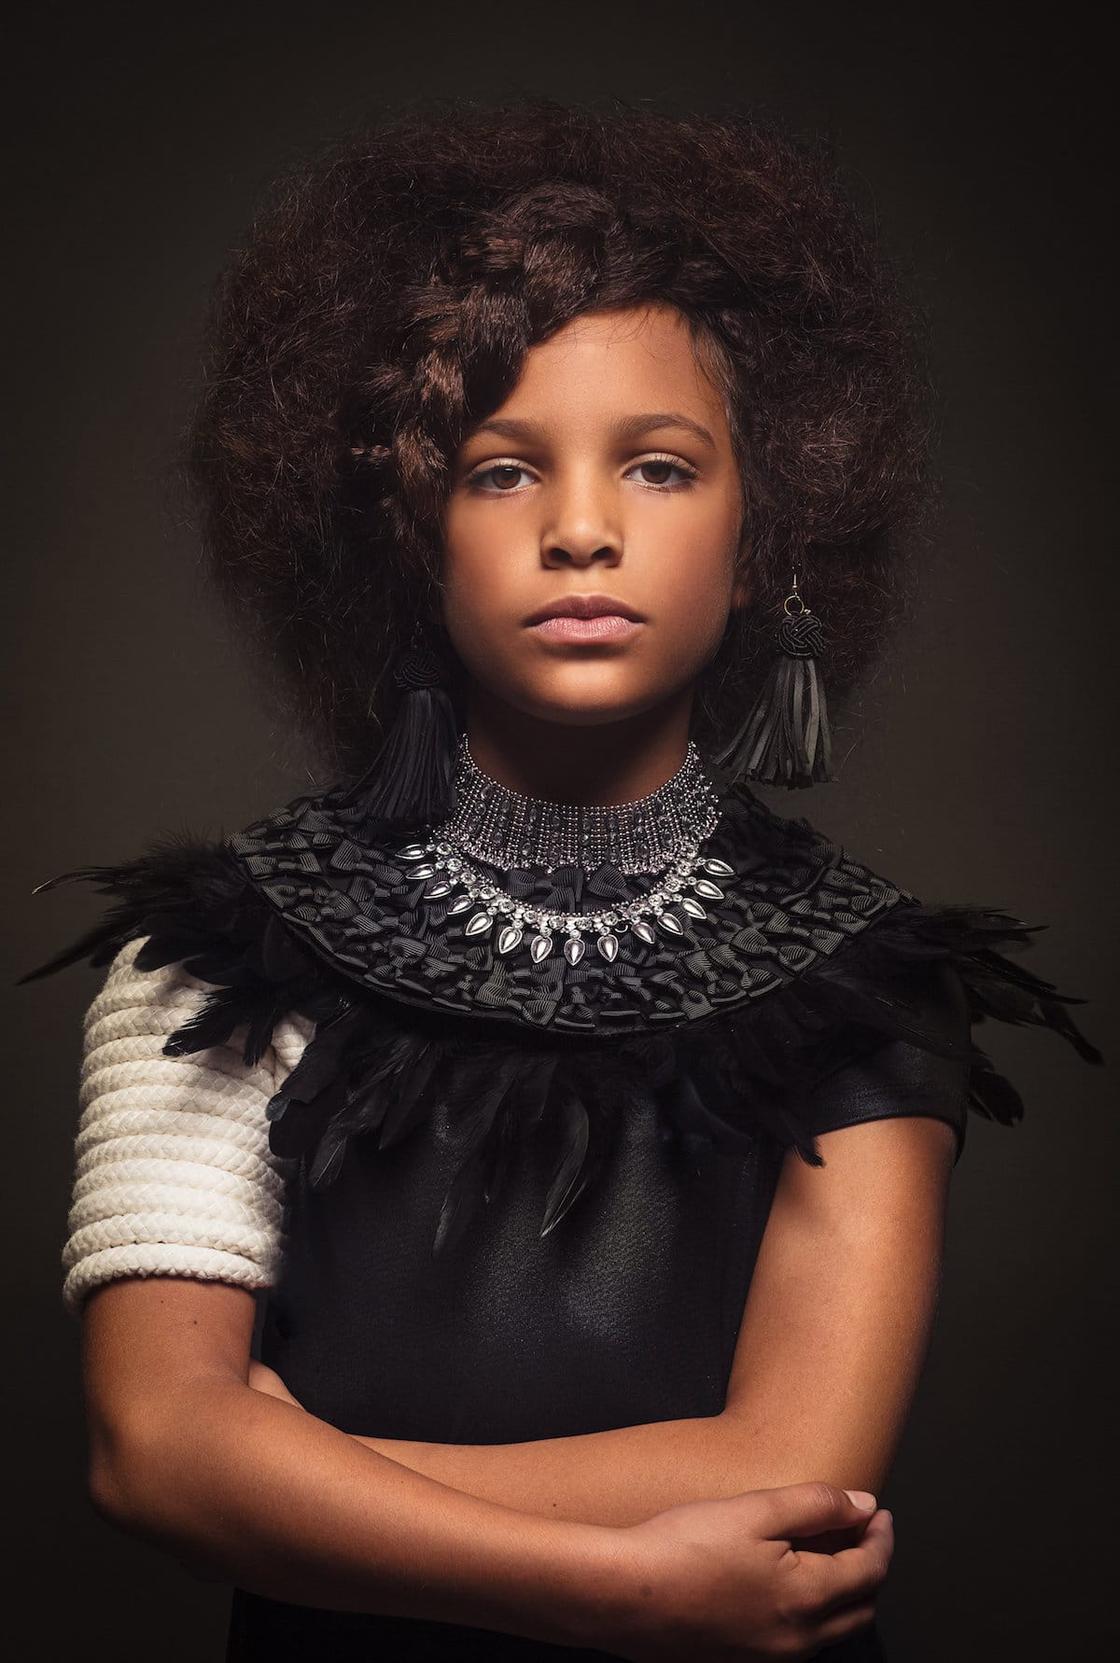 Afro Art : des petites filles rendent hommage aux cheveux afro - TRACE FR